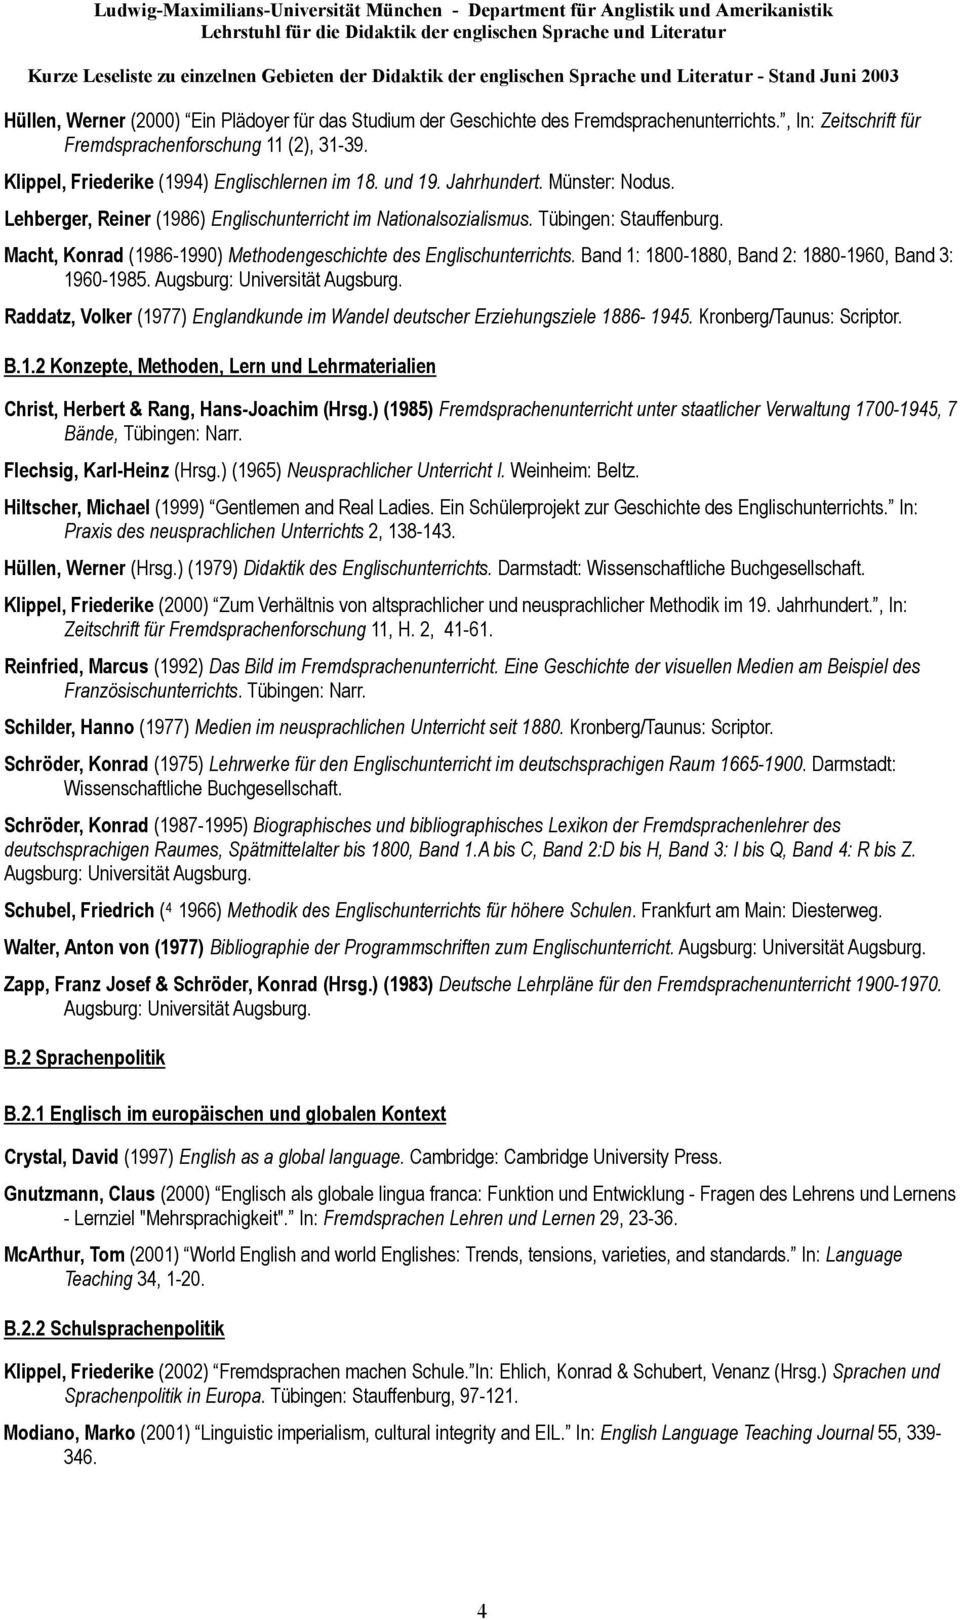 Macht, Konrad (1986-1990) Methodengeschichte des Englischunterrichts. Band 1: 1800-1880, Band 2: 1880-1960, Band 3: 1960-1985. Augsburg: Universität Augsburg.